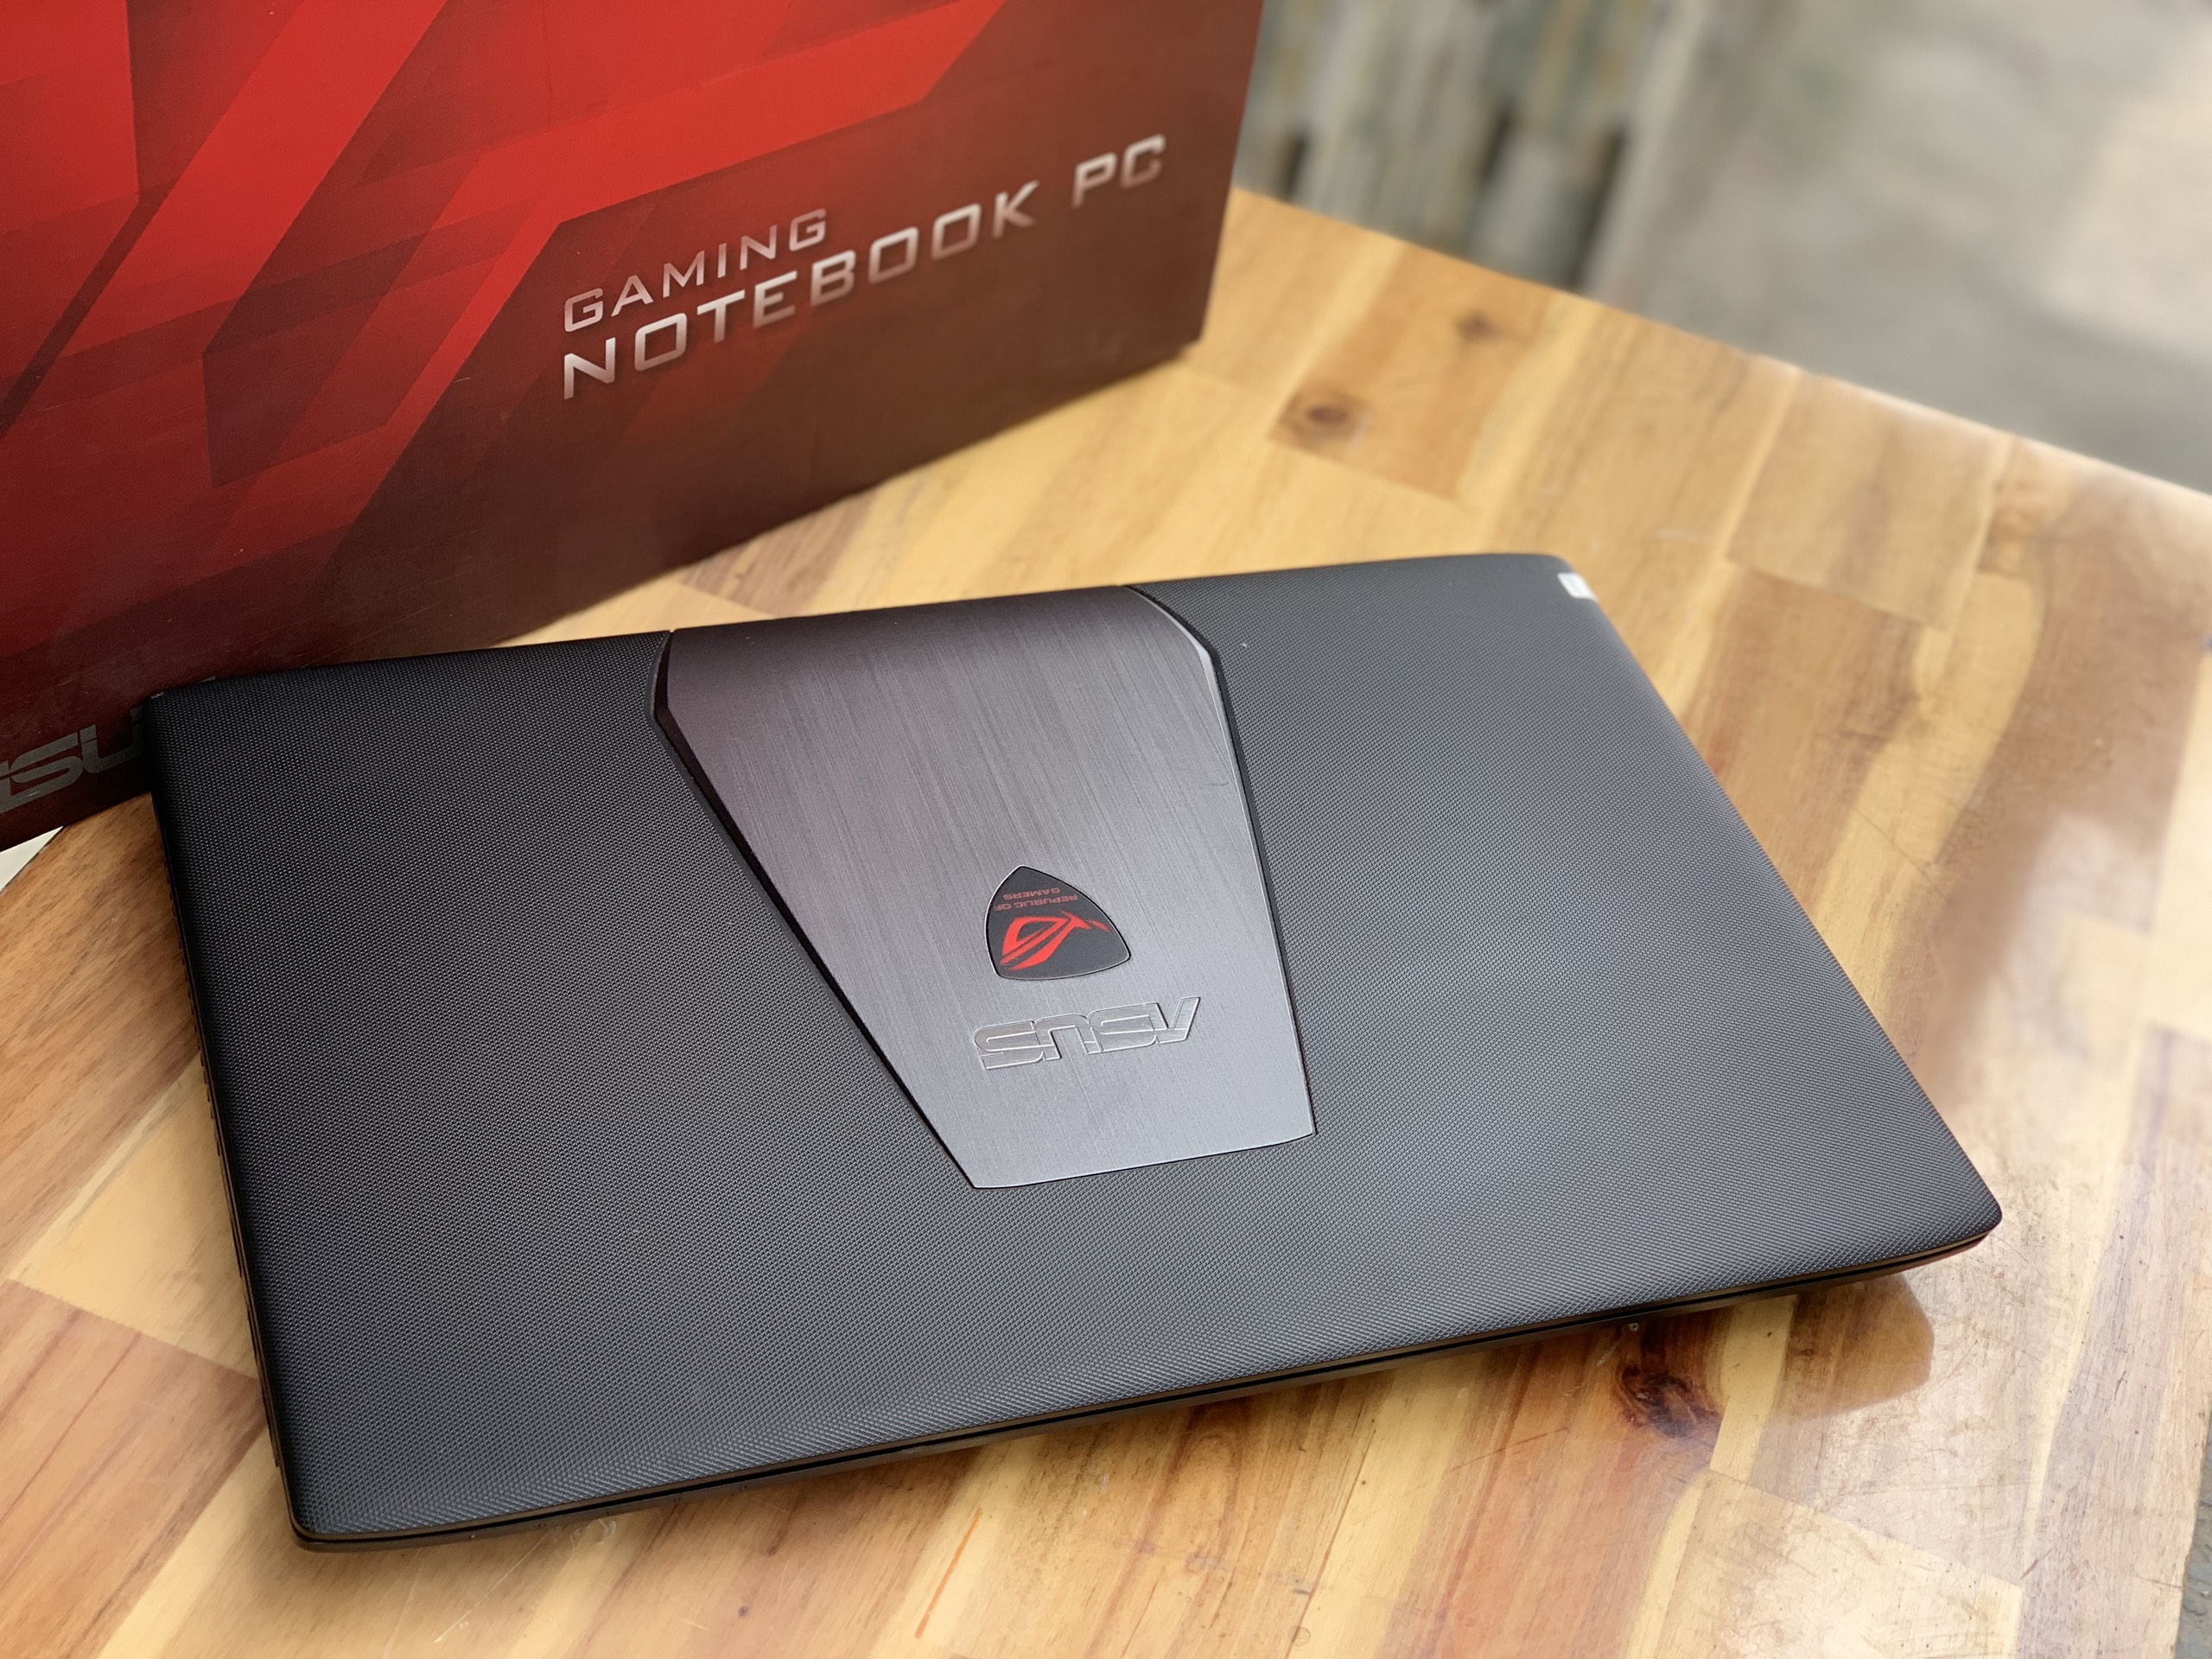 Laptop Asus Rog GL552JX, i5 4200H 8G SSD240 Vga rời GTX950M 4G LED đỏ Full Box Giá rẻ1